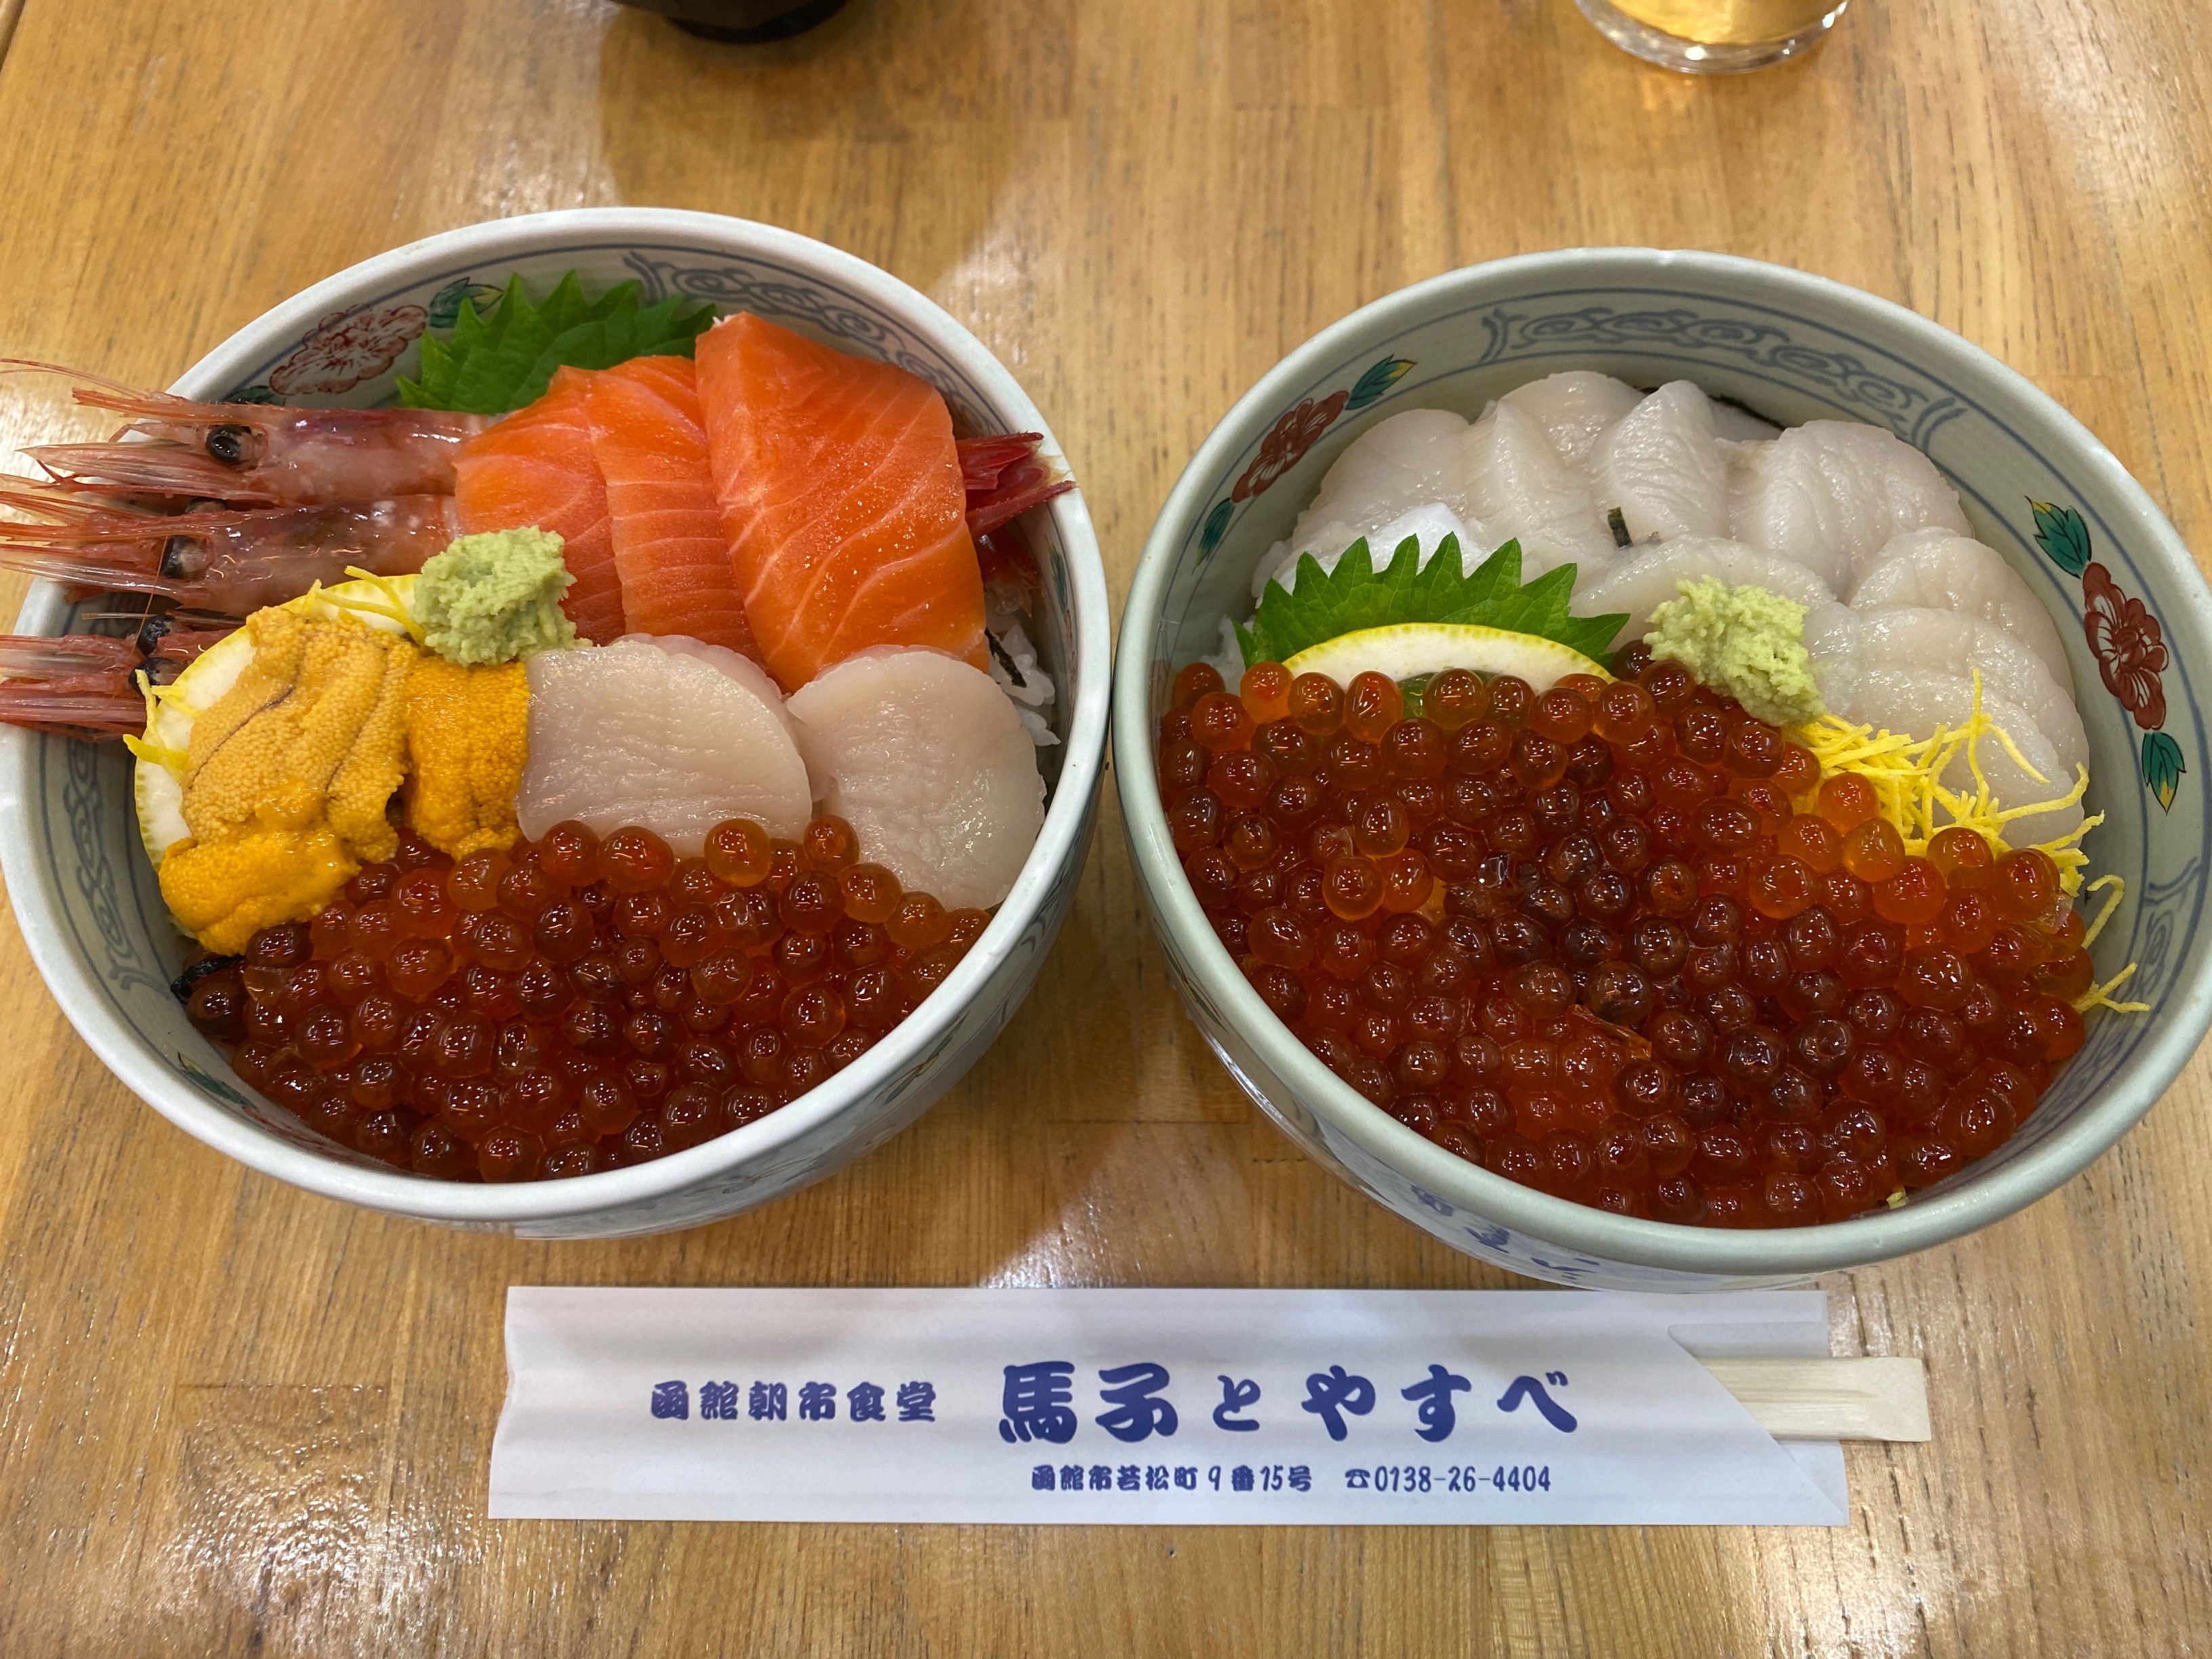 馬子とやすべ 函館朝市のどんぶり横丁で海鮮丼をいただきました かなちゅうごはん